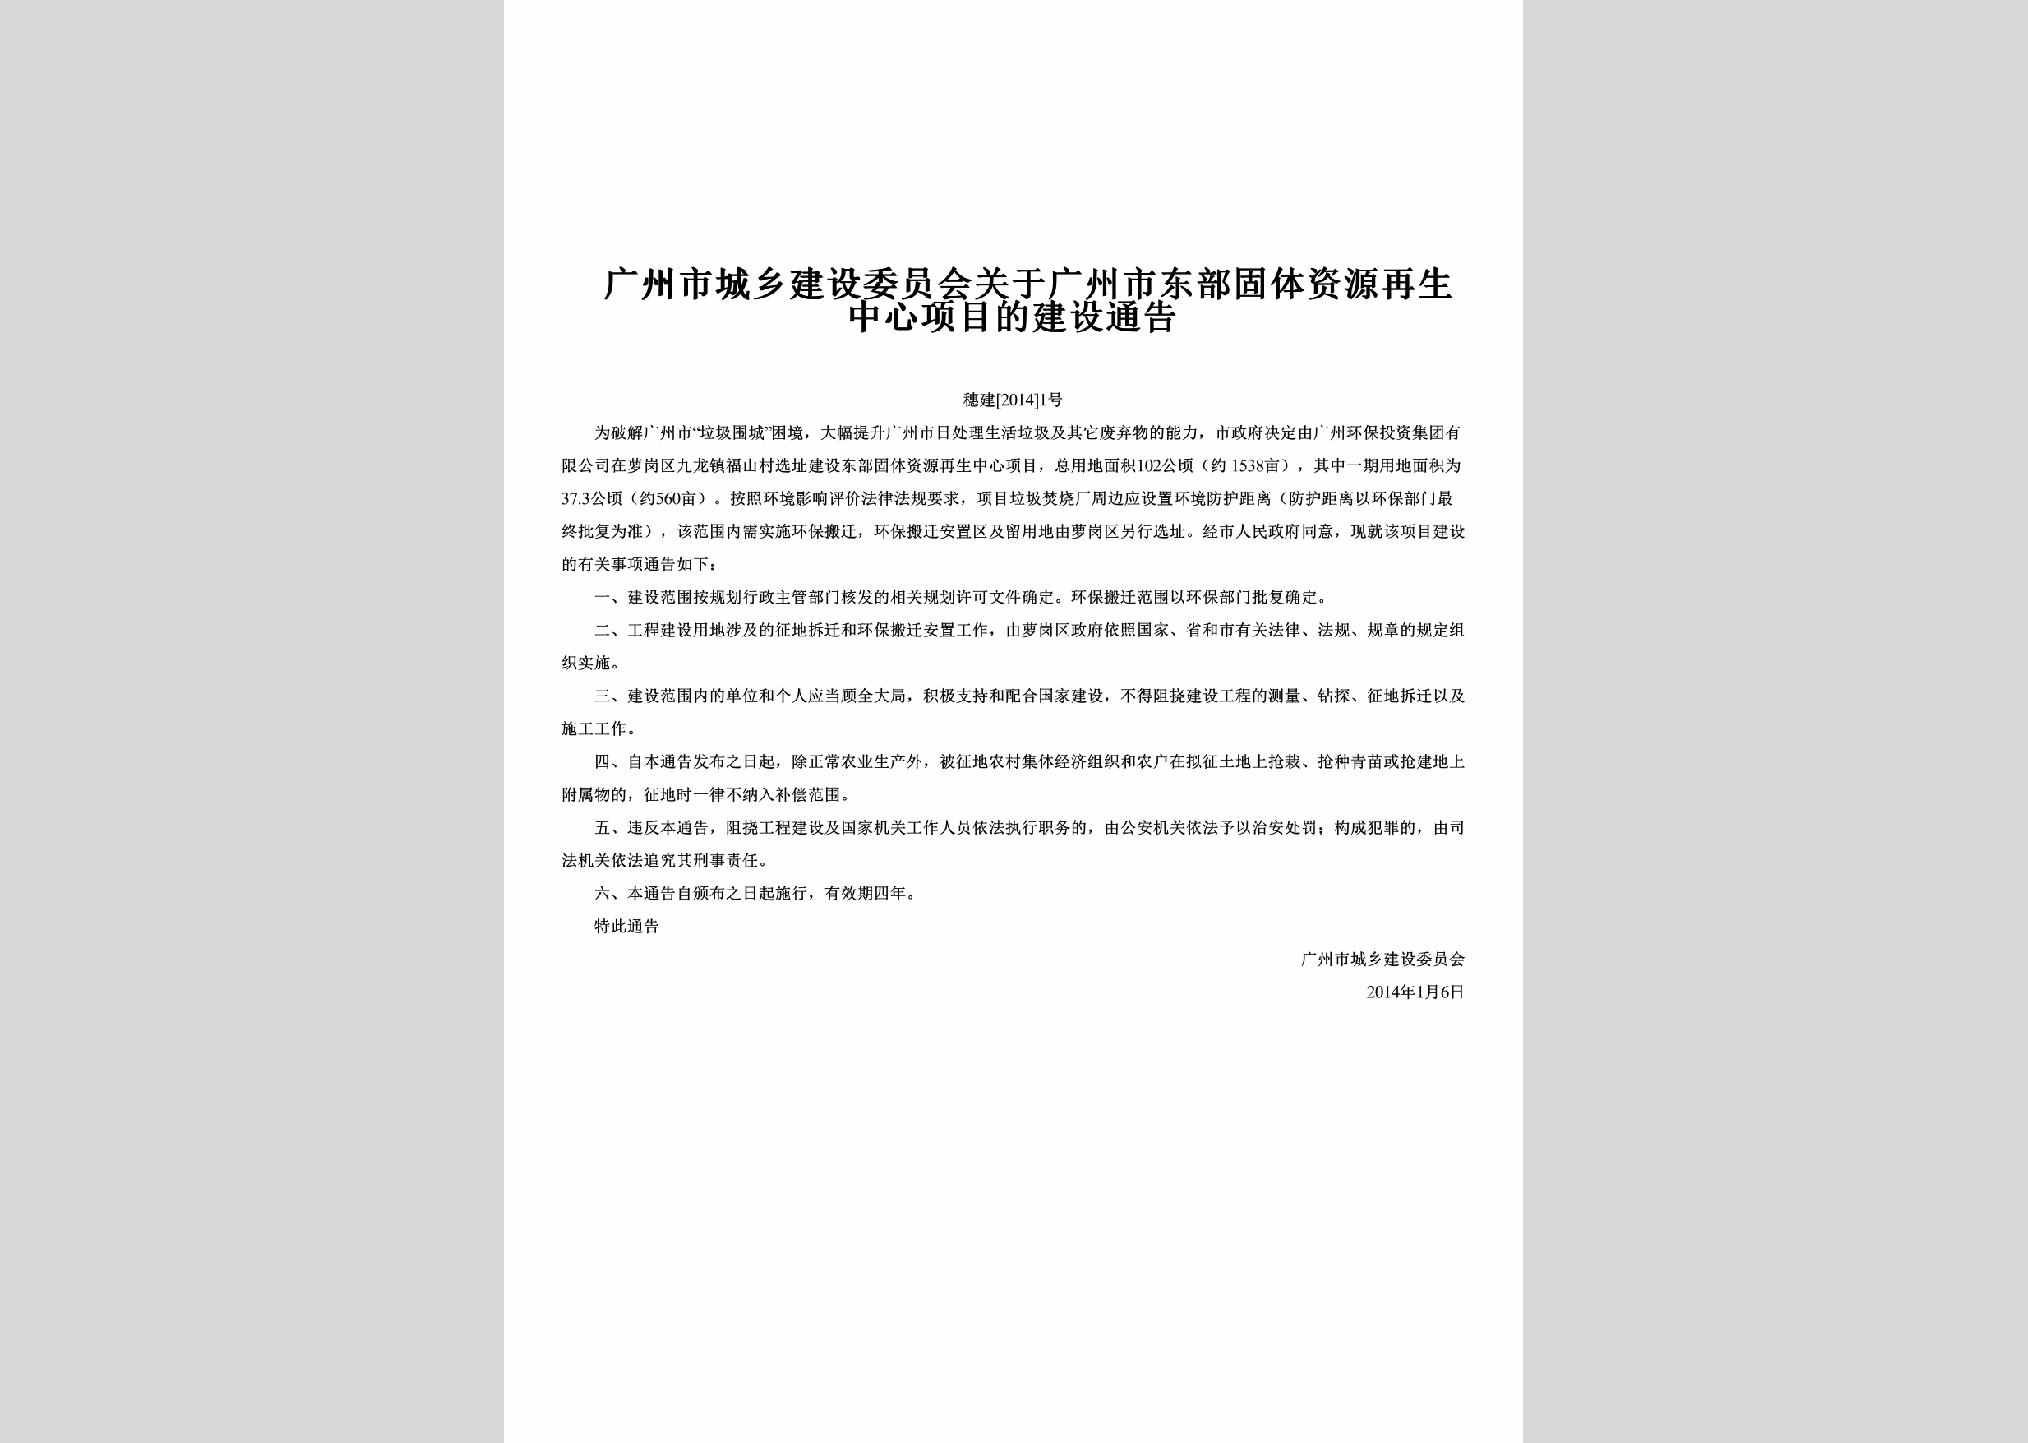 穗建[2014]1号：关于广州市东部固体资源再生中心项目的建设通告